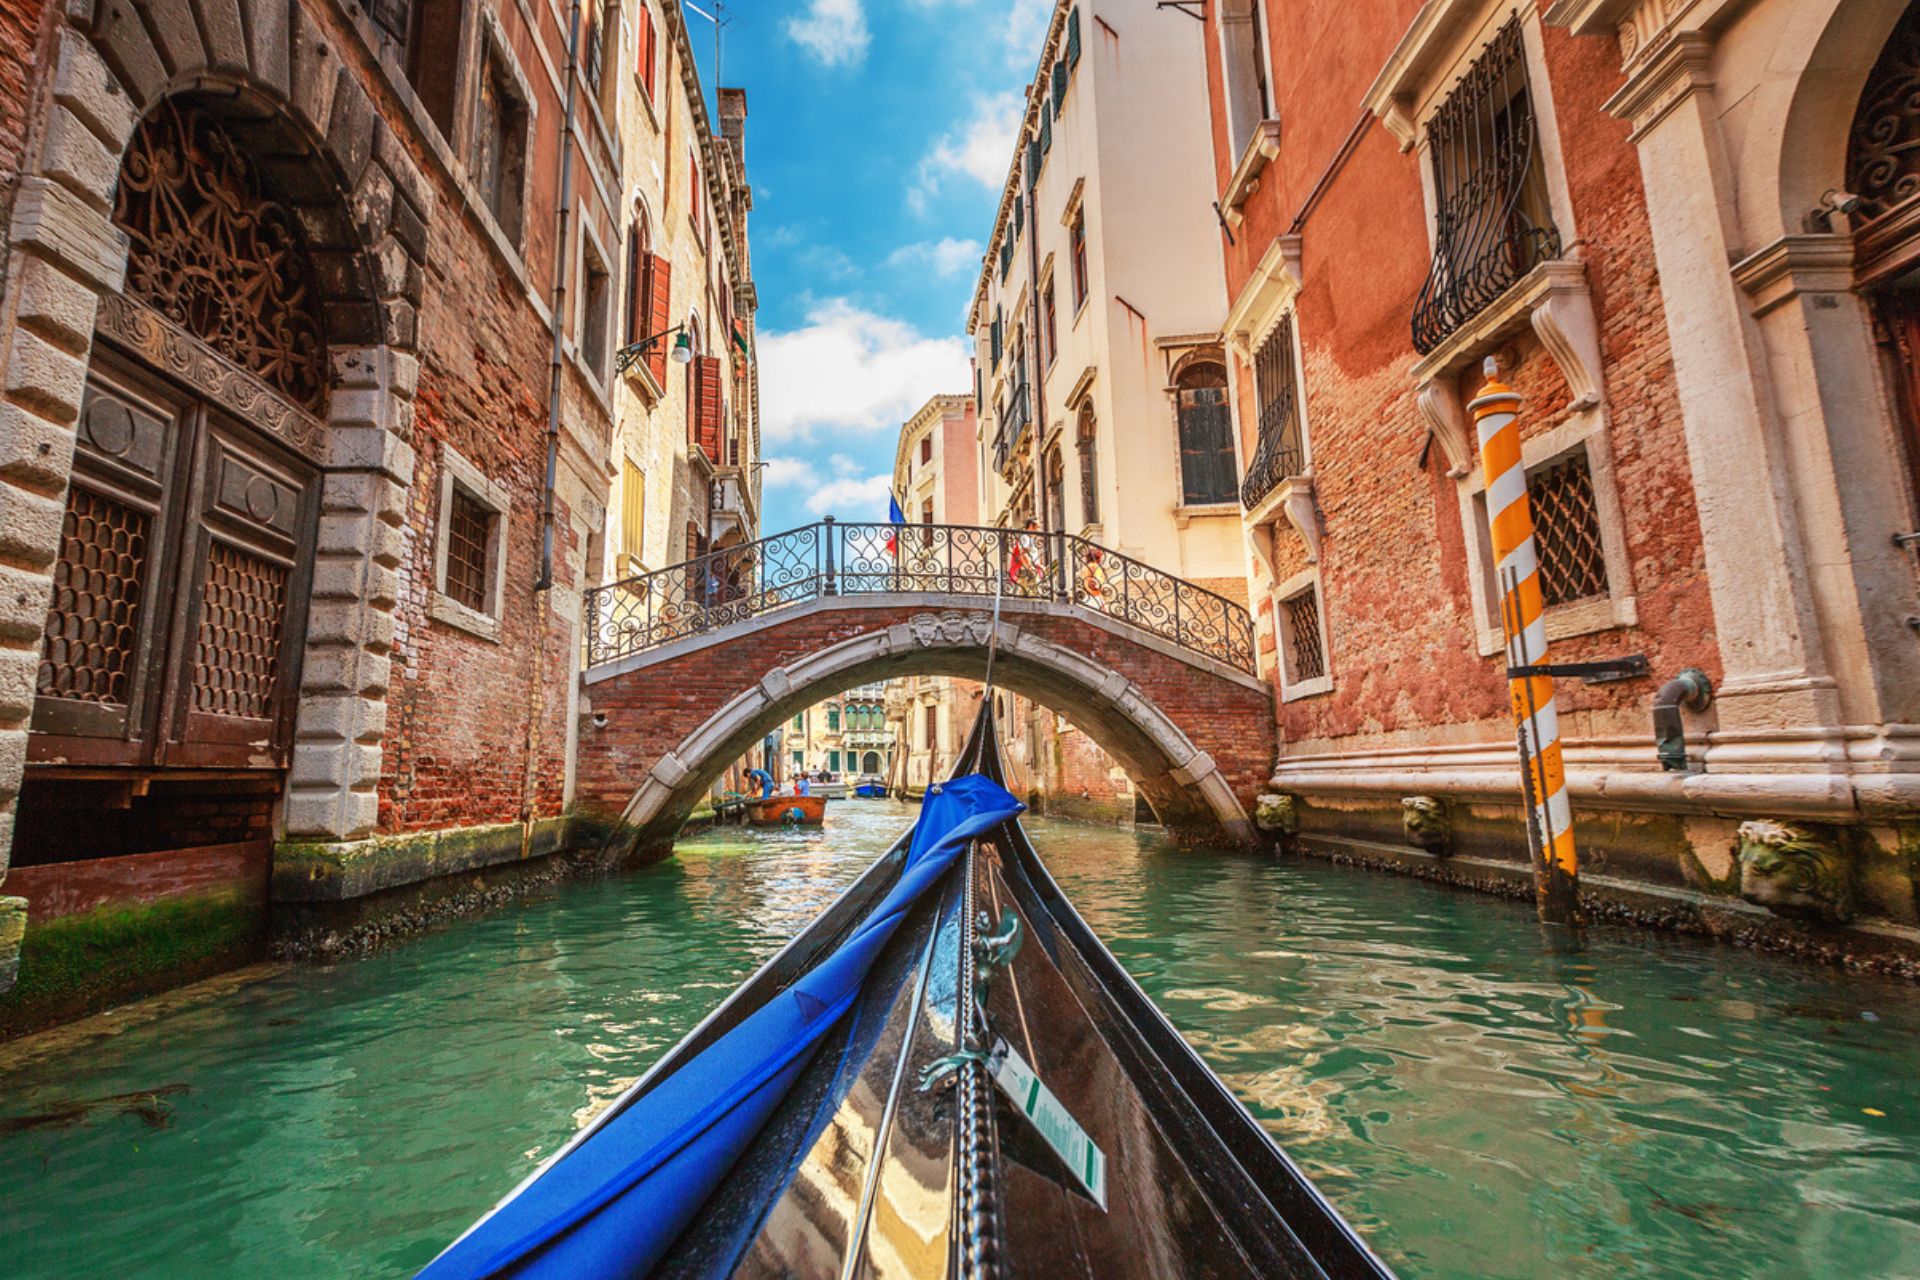 Venetsiya: Venetsiya poytaxtining mashhur kanallari